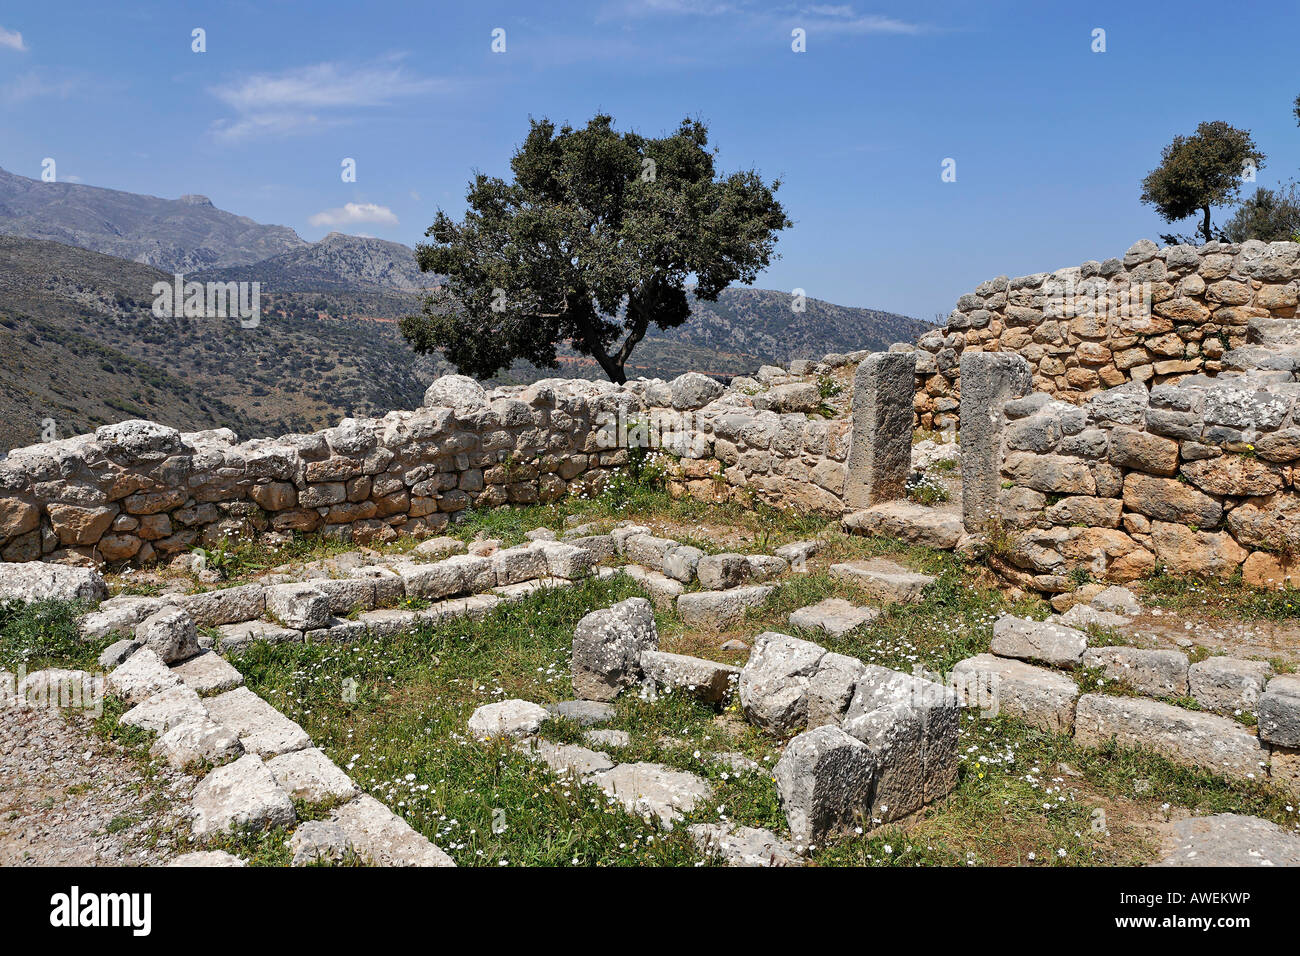 Sala di riunione, rovine risalenti al V secolo a.C. (periodo dorico), lato, Creta, Grecia, Europa Foto Stock